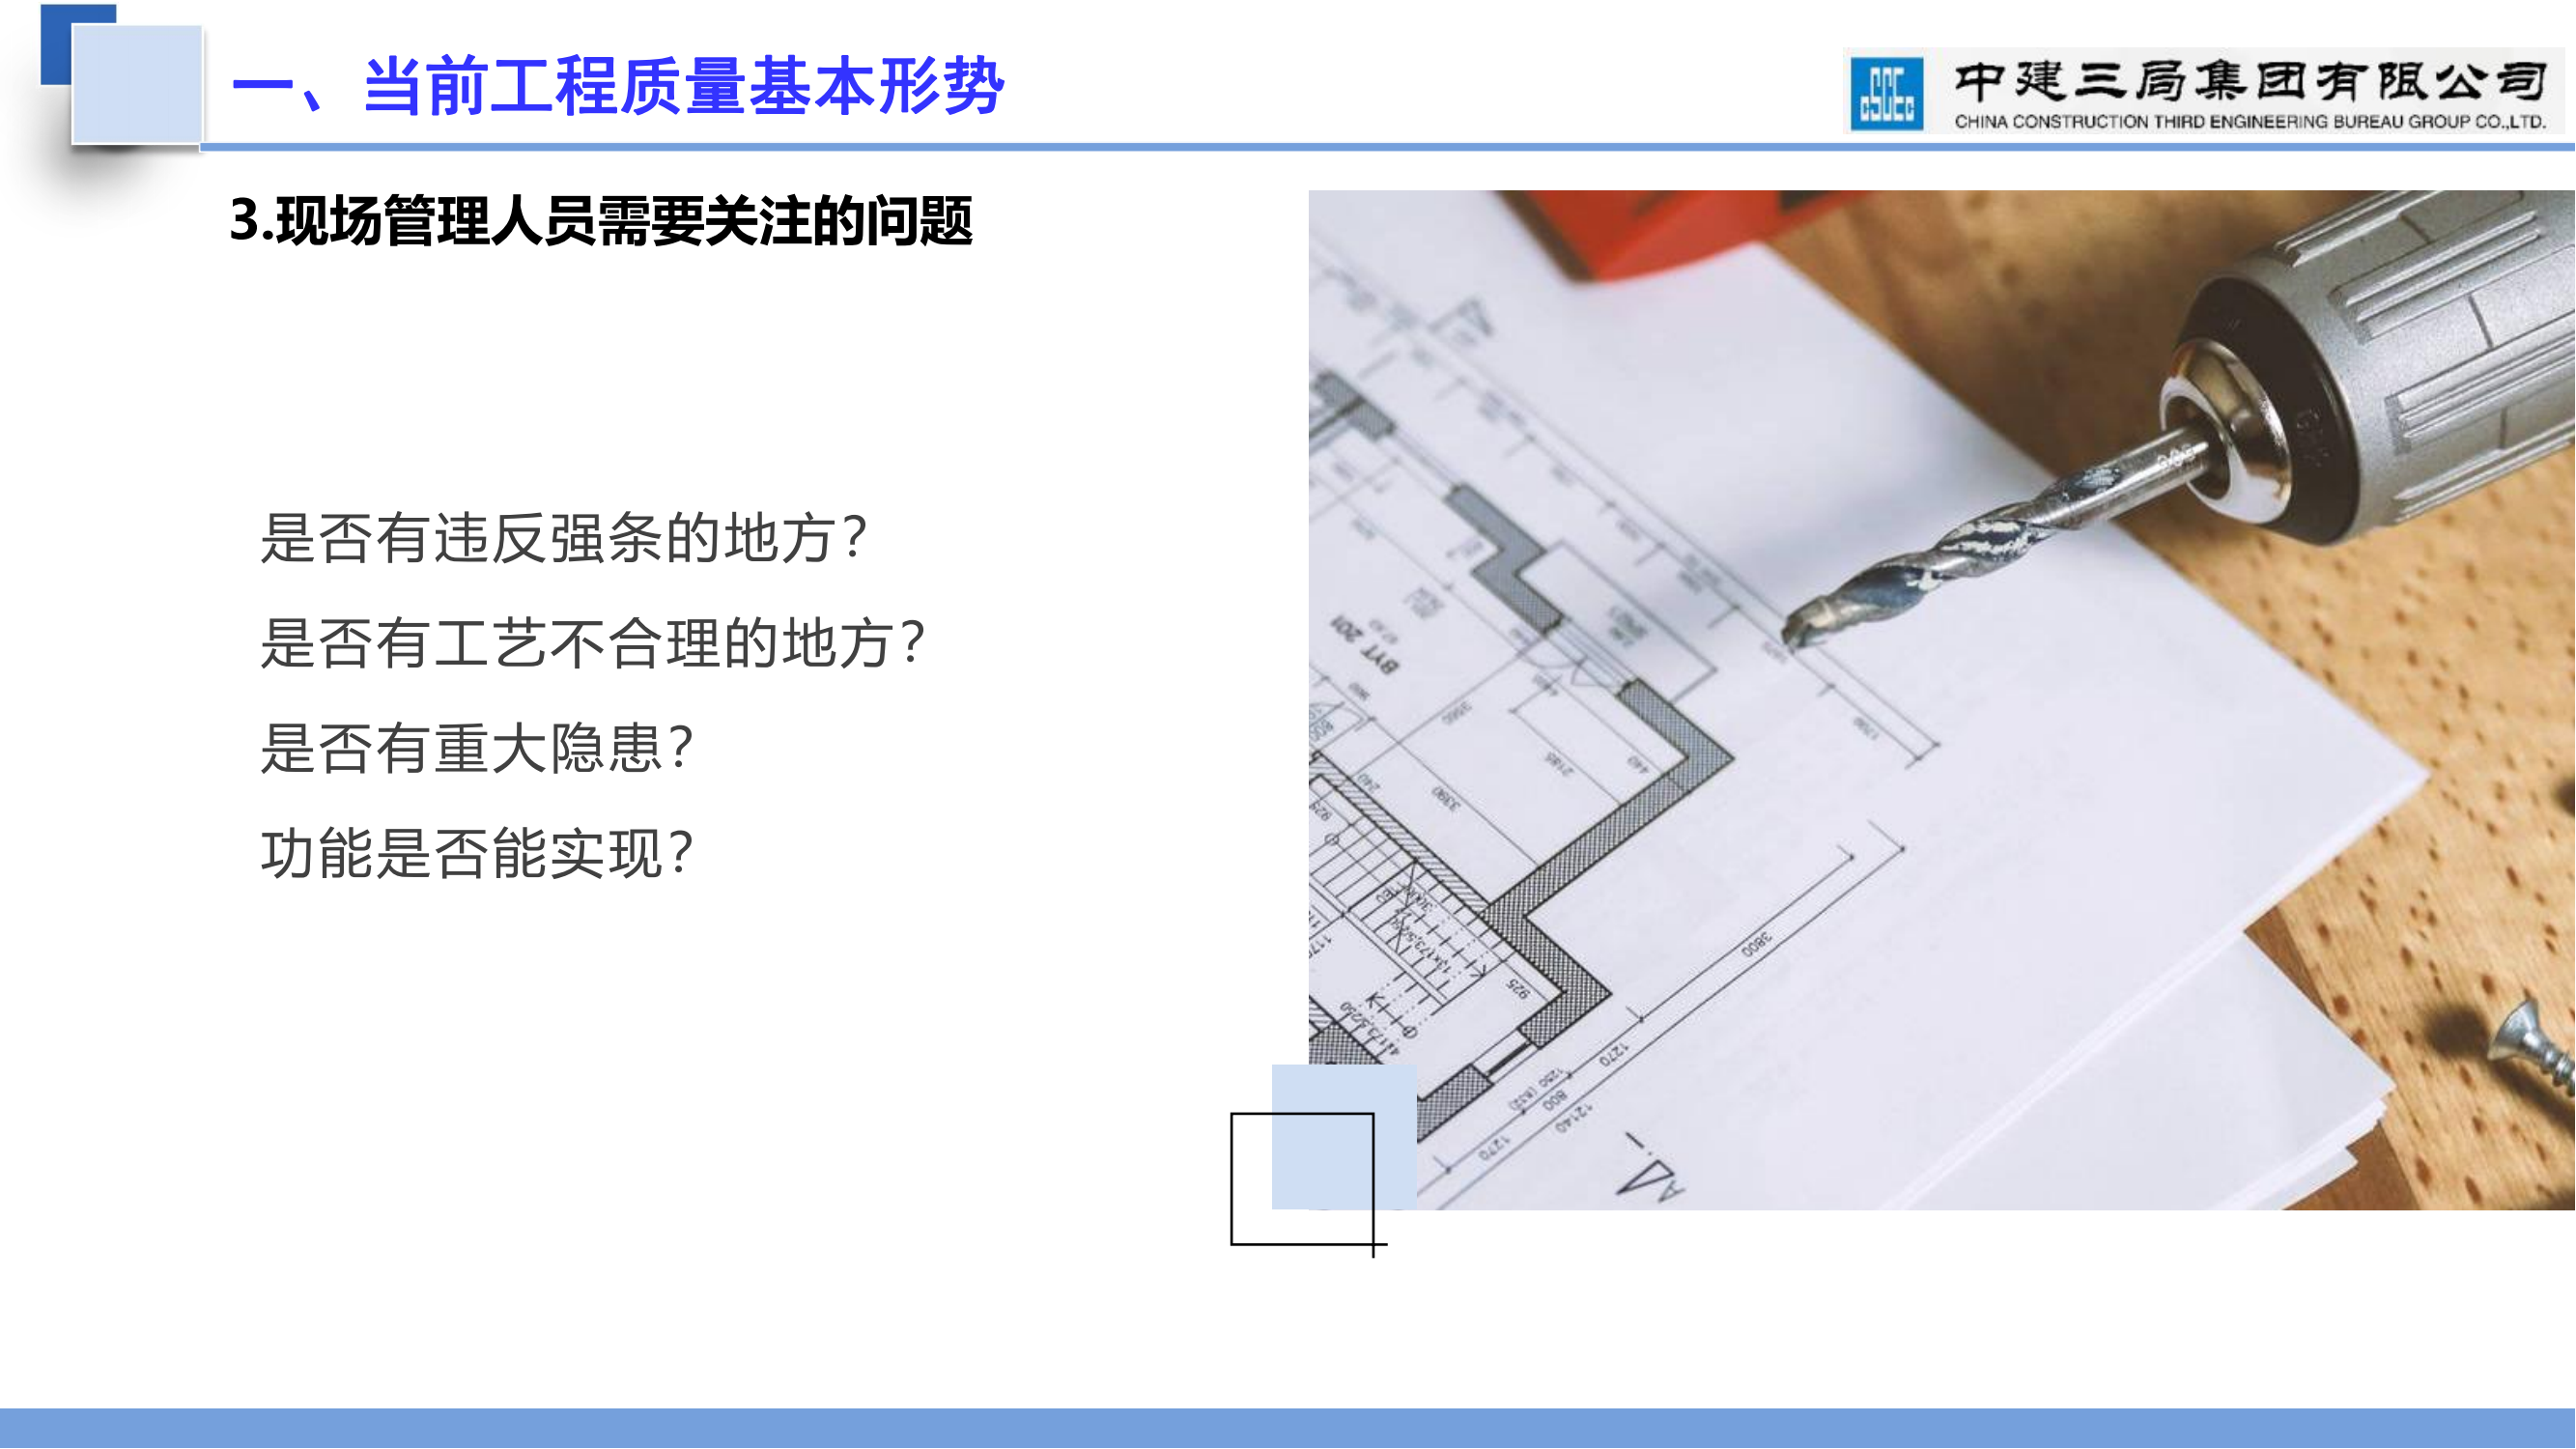 土建工程与机电安装工程界面划分与配合管理插图(6)